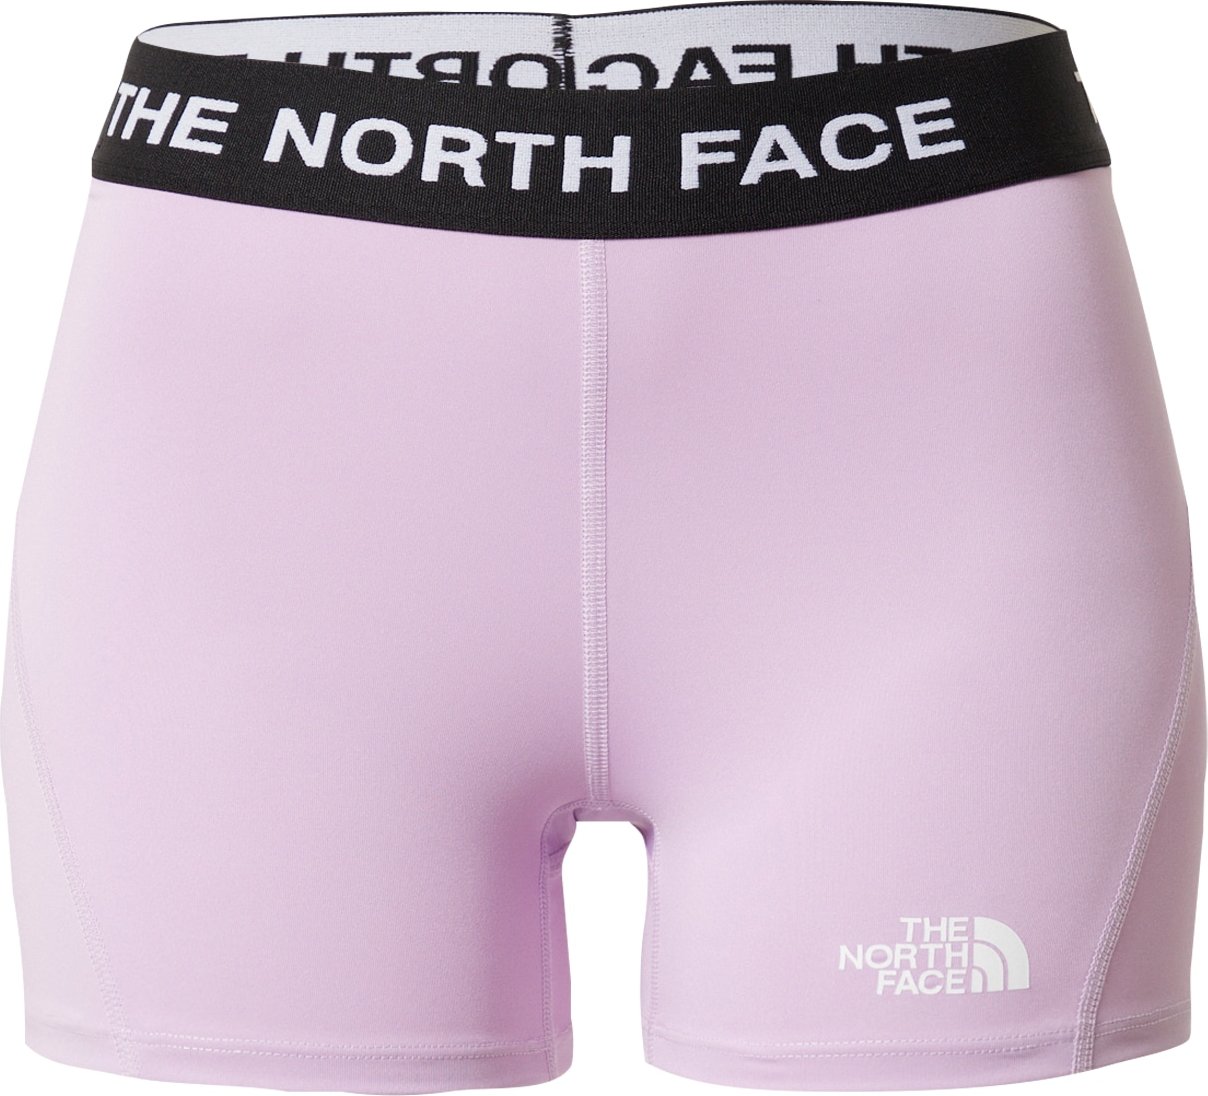 THE NORTH FACE Sportovní kalhoty fialová / černá / bílá